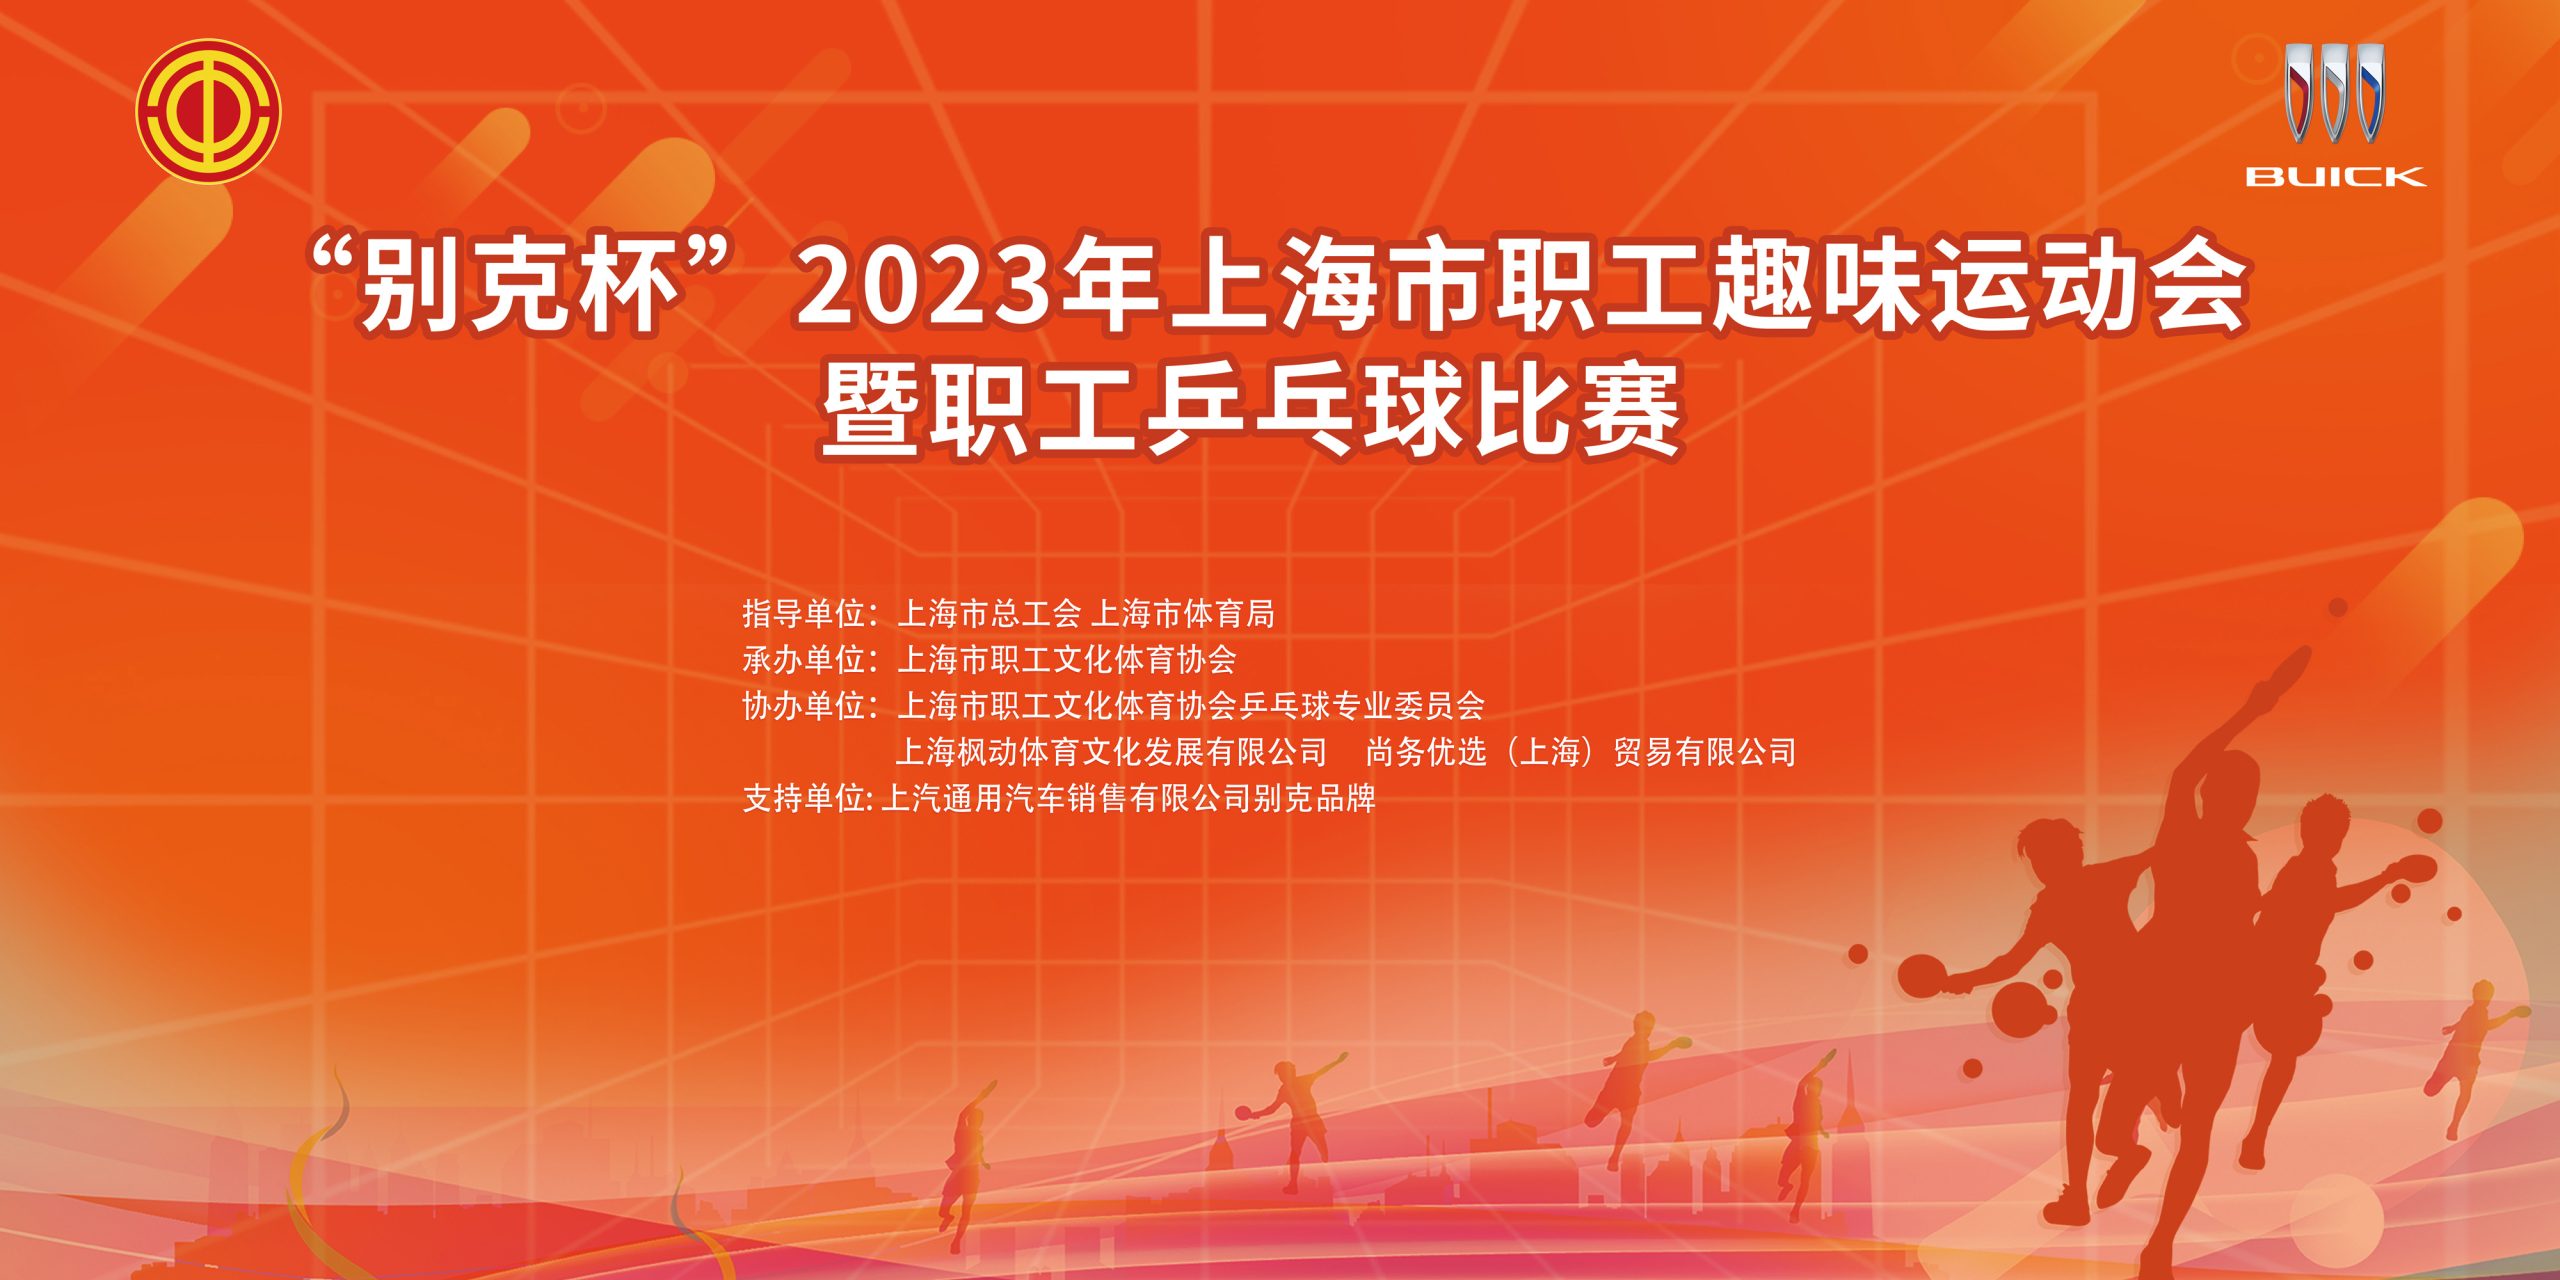 趣味运动会|乒乓球比赛|“别克杯”2023年上海市职工趣味运动会暨职工乒乓球比赛精彩回顾！